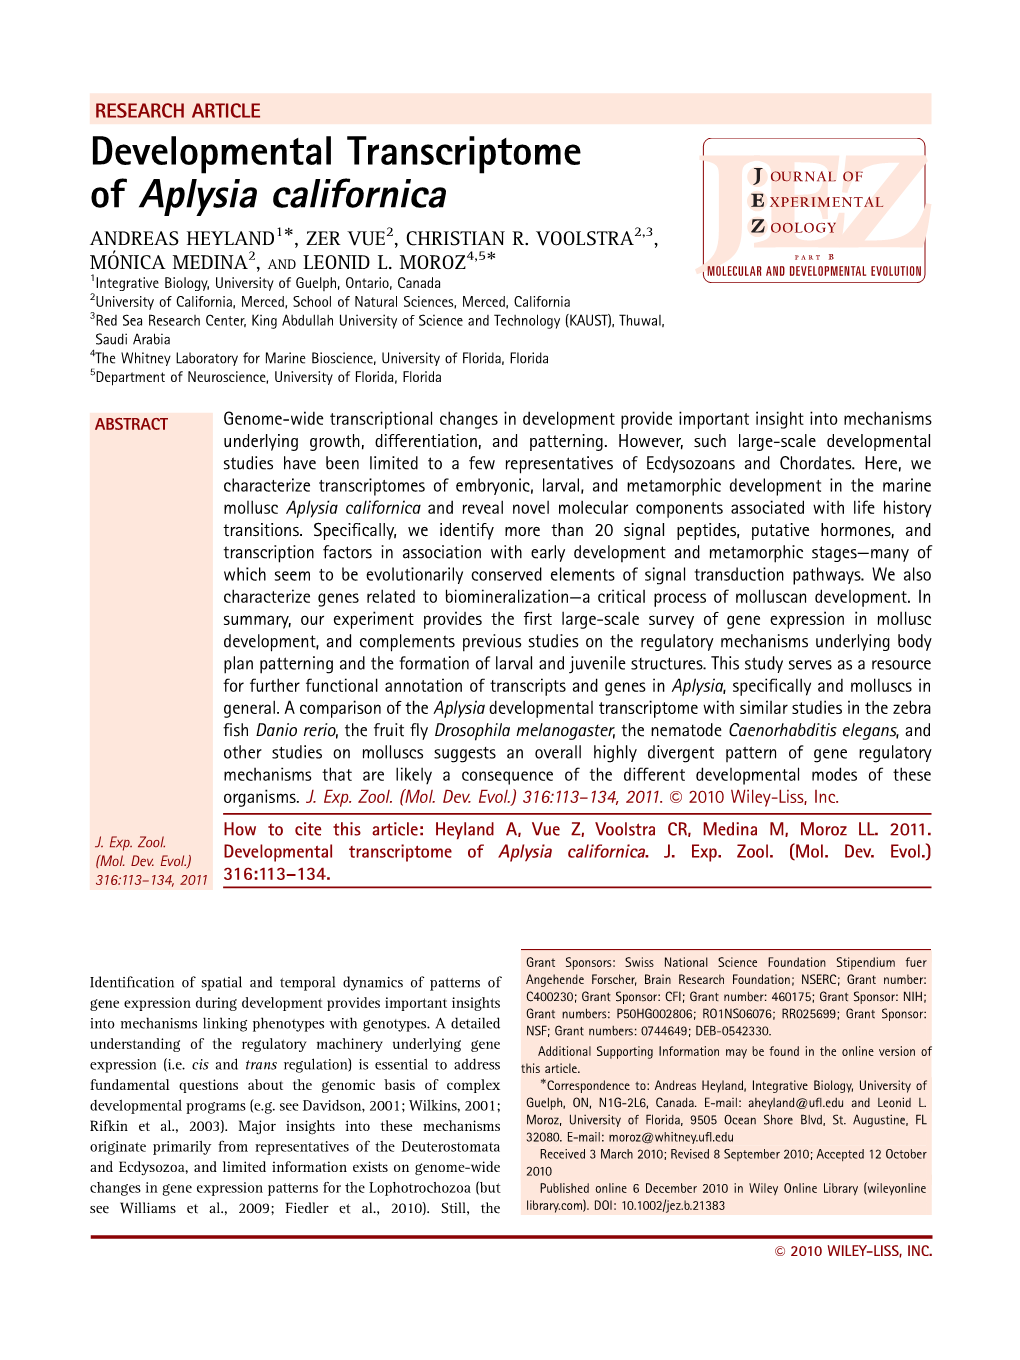 Developmental Transcriptome of Aplysia Californica'